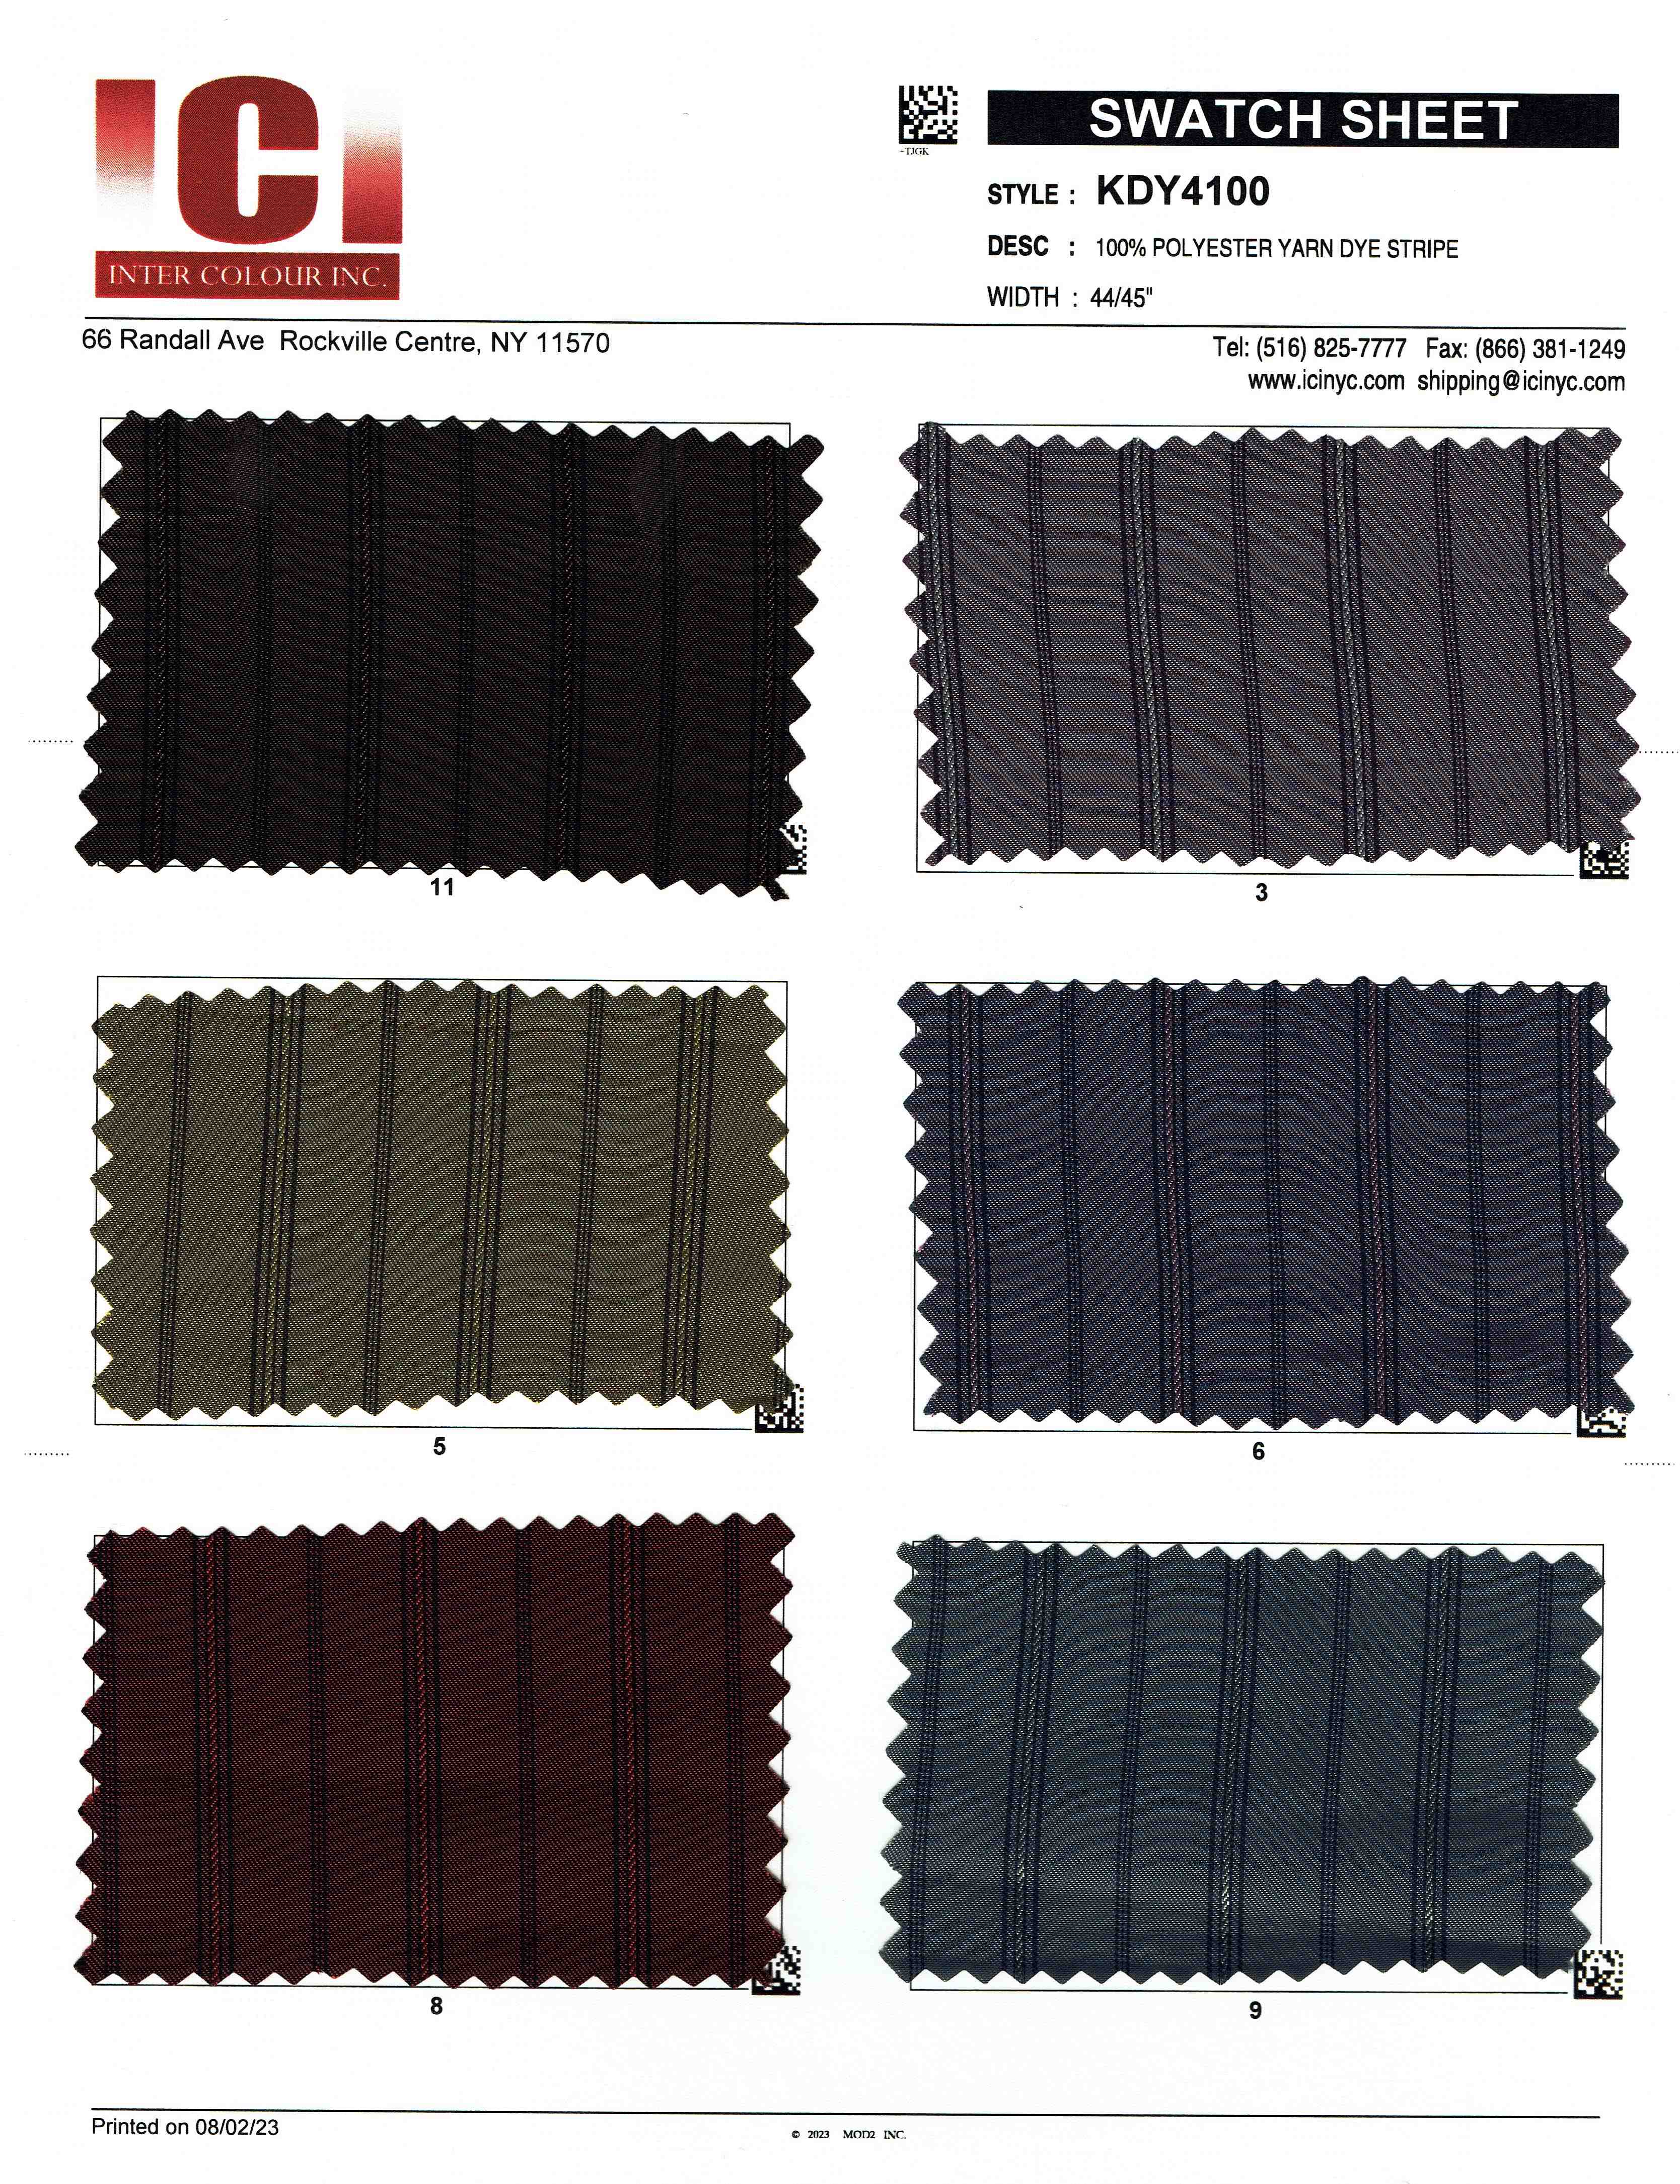 View 100% Polyester Yarn Dye Stripe